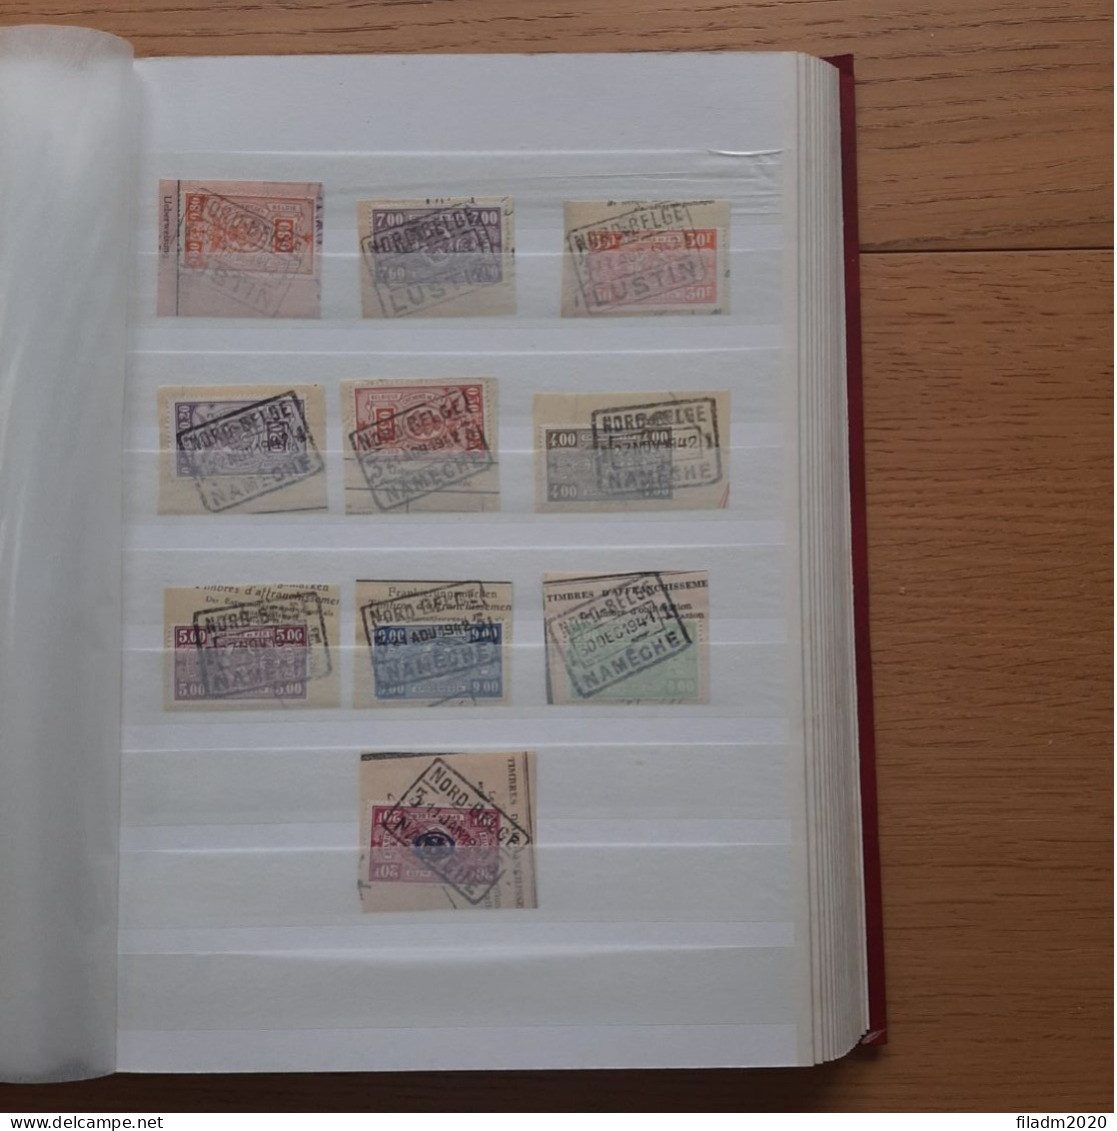 Collectie NORD BELGE gestempeld : 750 verschillende zegels : mooi opgezette verzameling in insteekboek